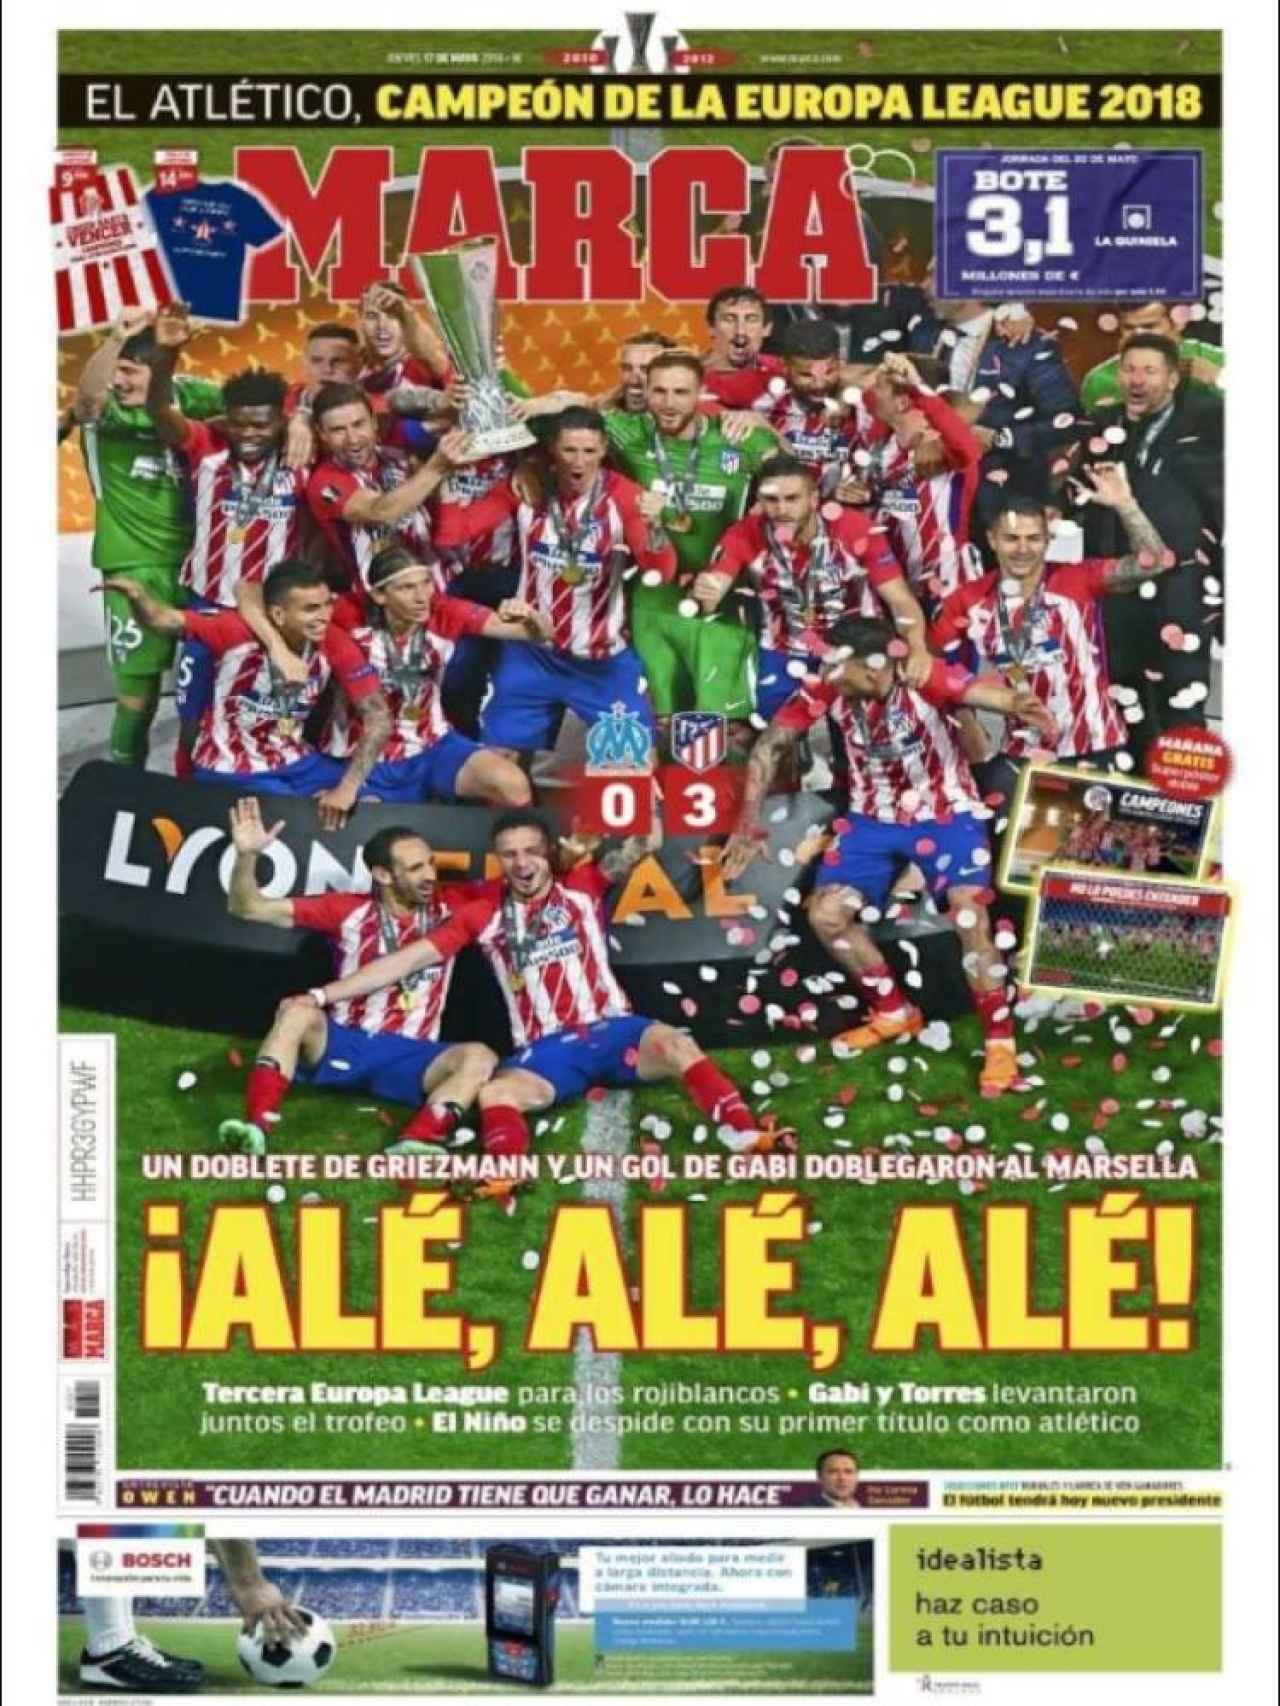 La Europa League del Atlético copa las portadas de la prensa deportiva del 17 de mayo